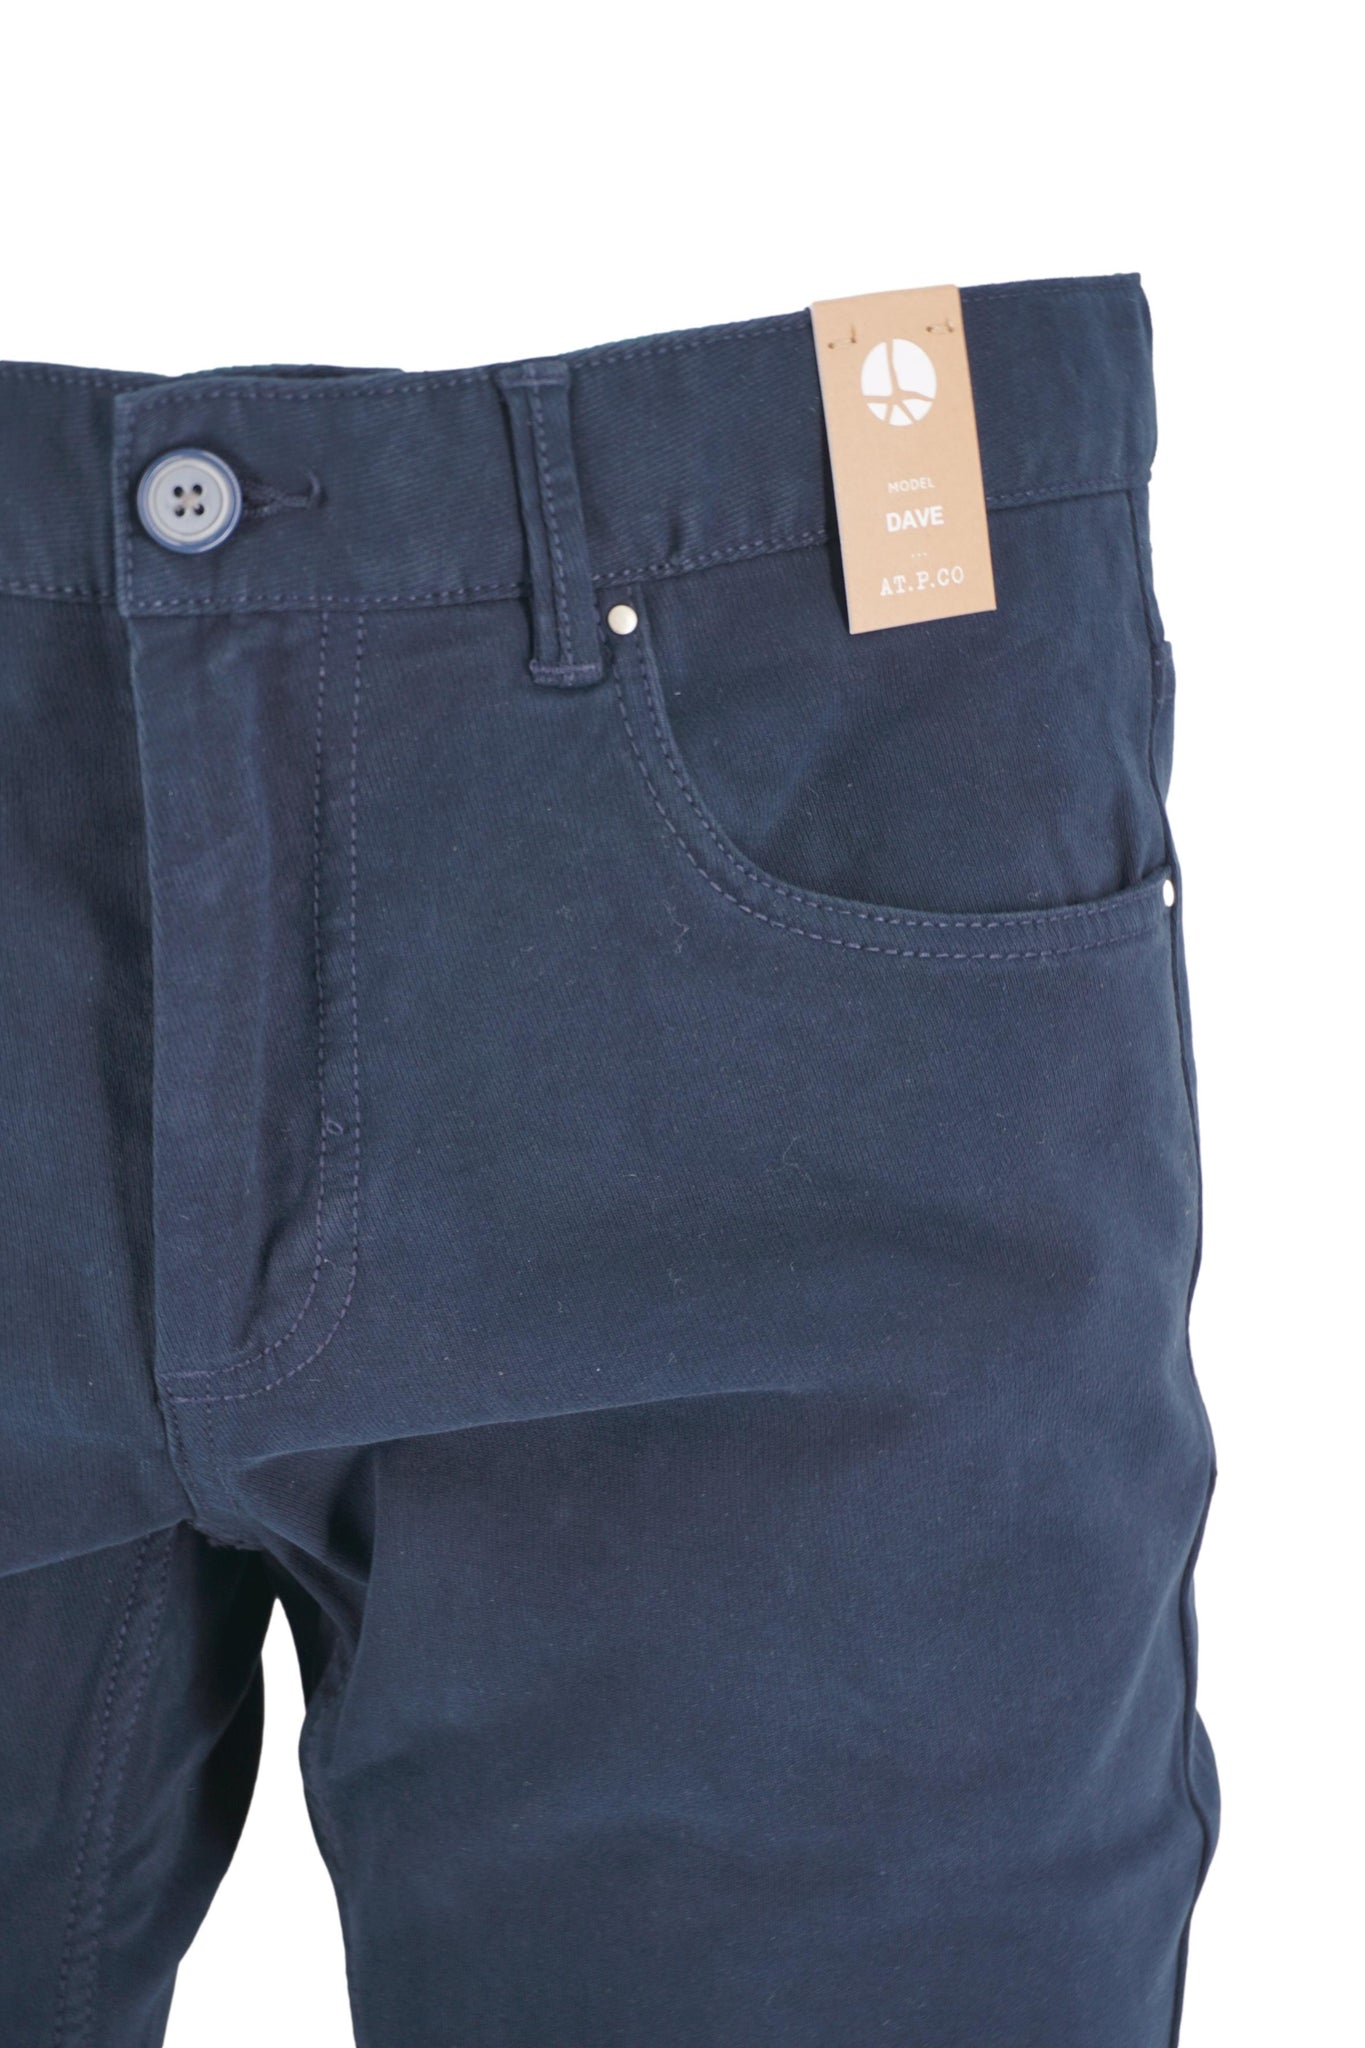 Pantalone Cinque Tasche in Caldo Cotone / Blu - Ideal Moda